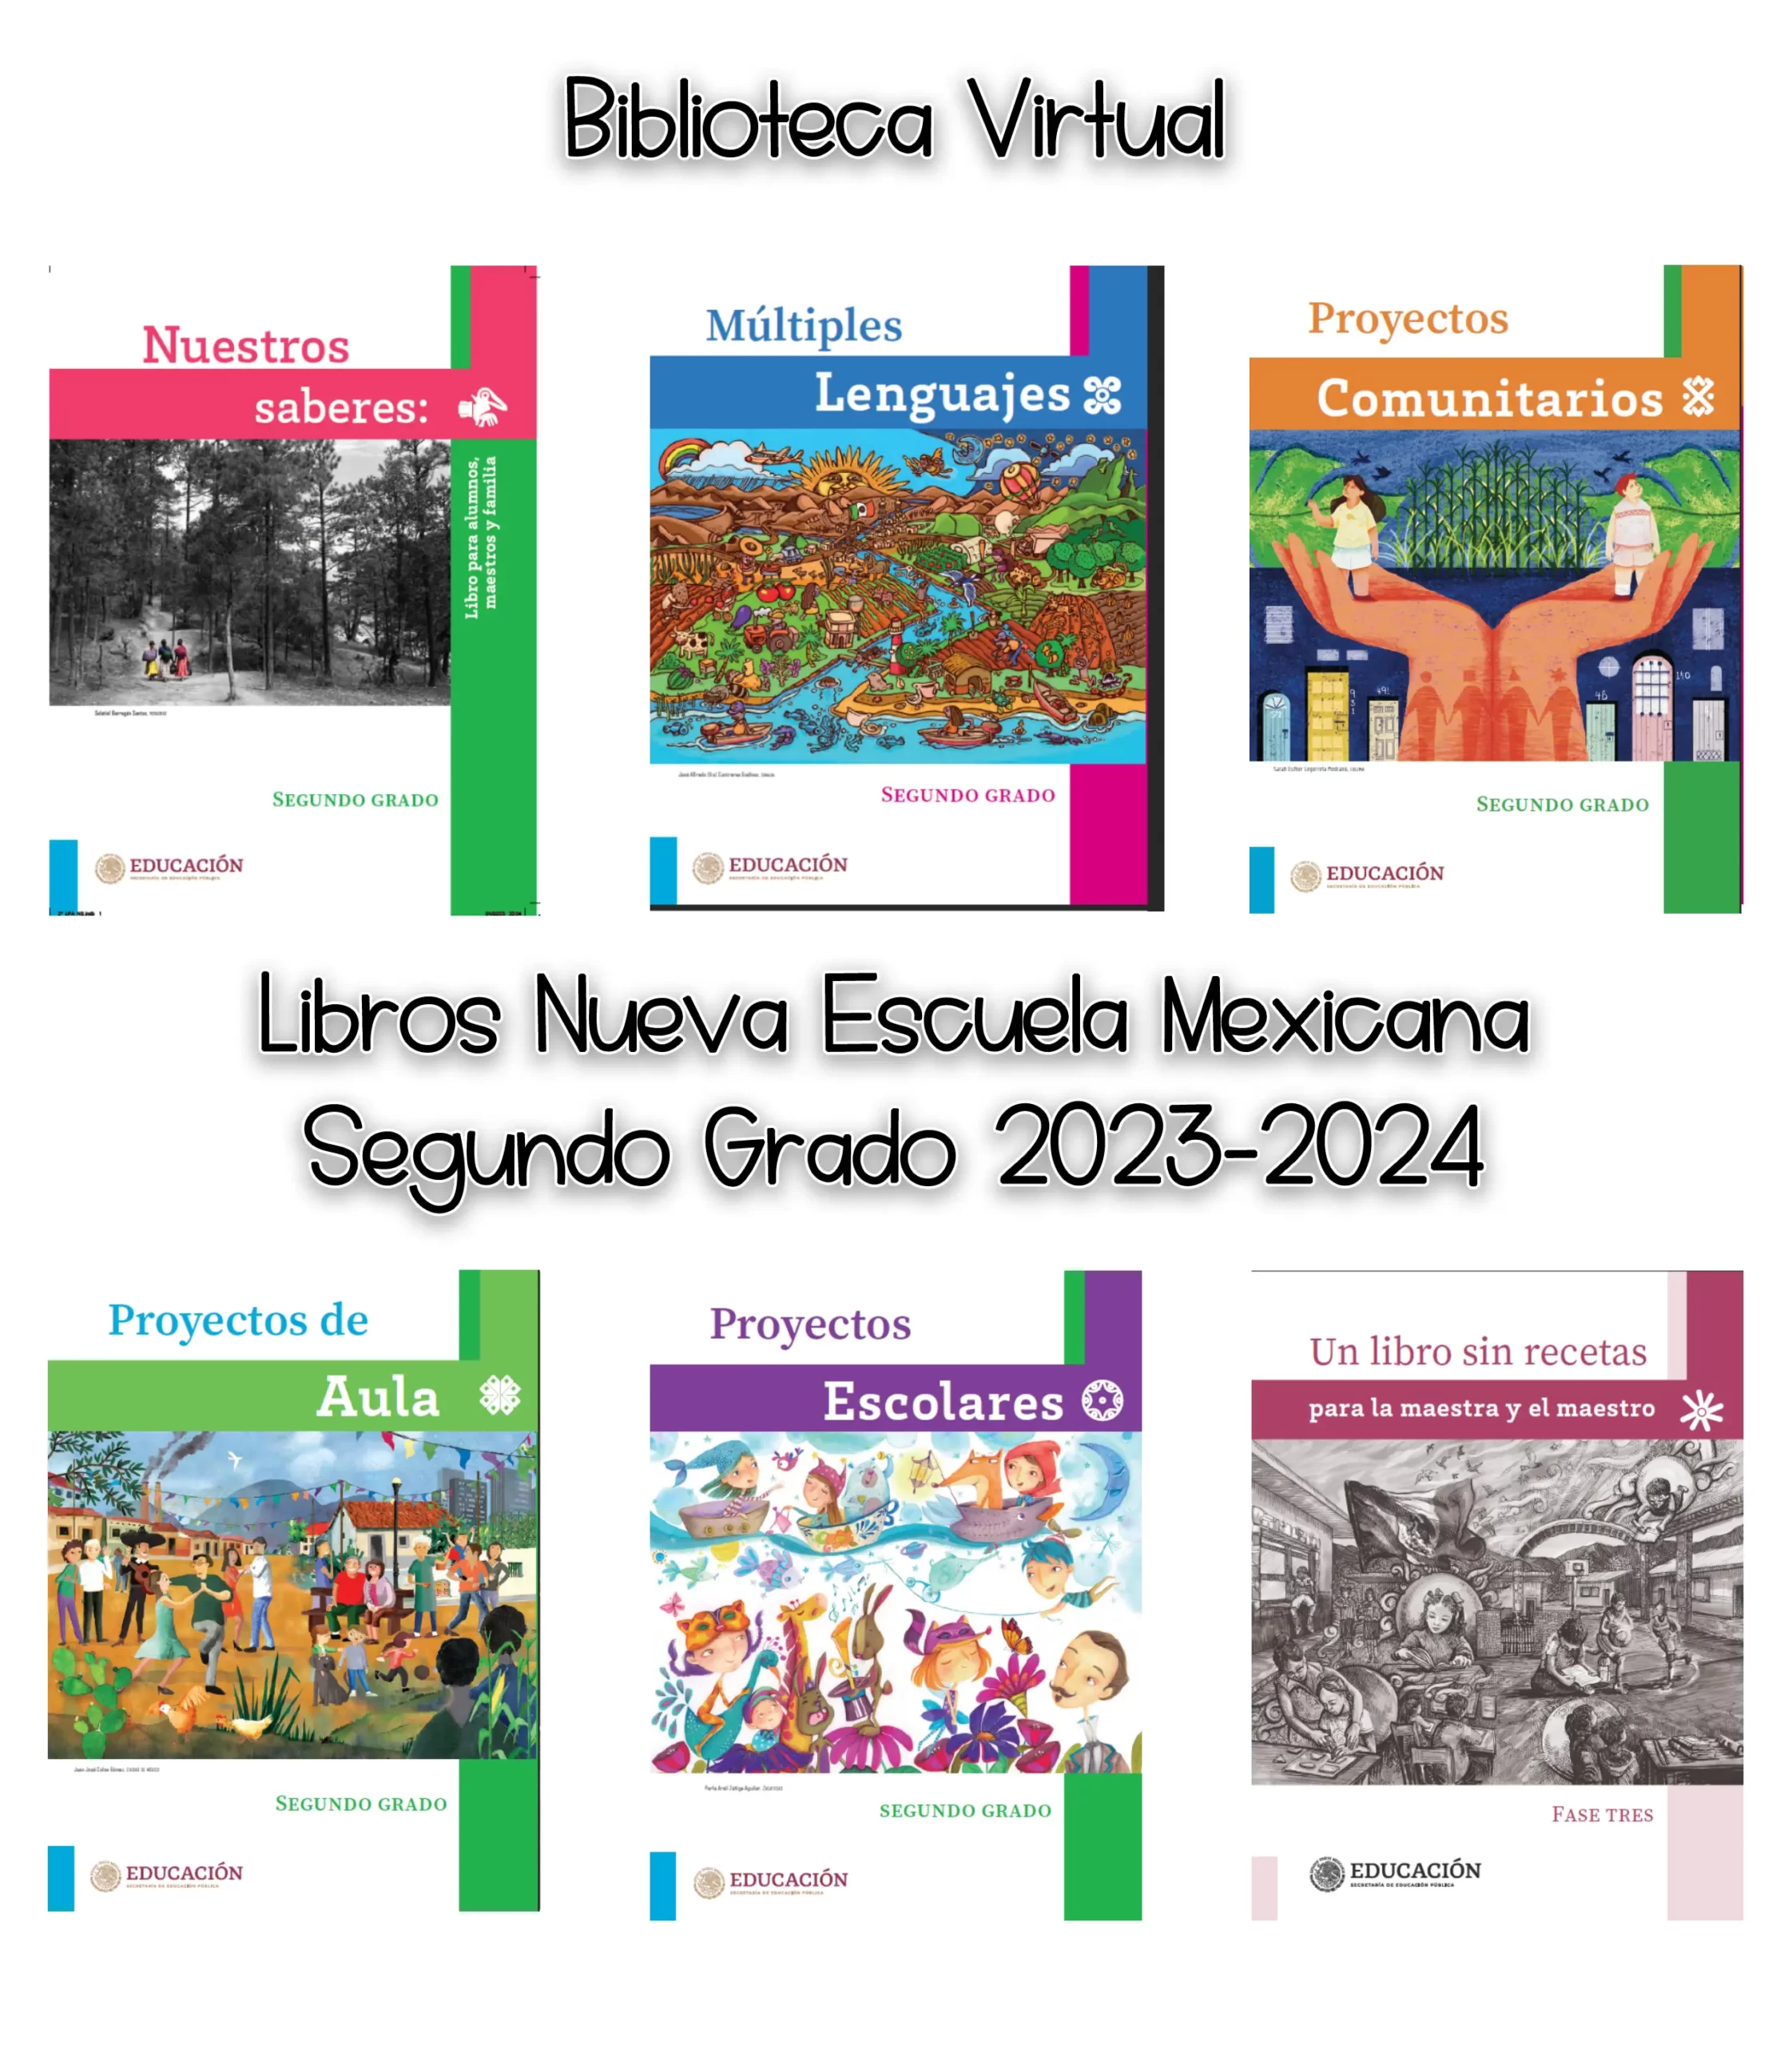 Libros Nueva Escuela Mexicana Segundo Grado